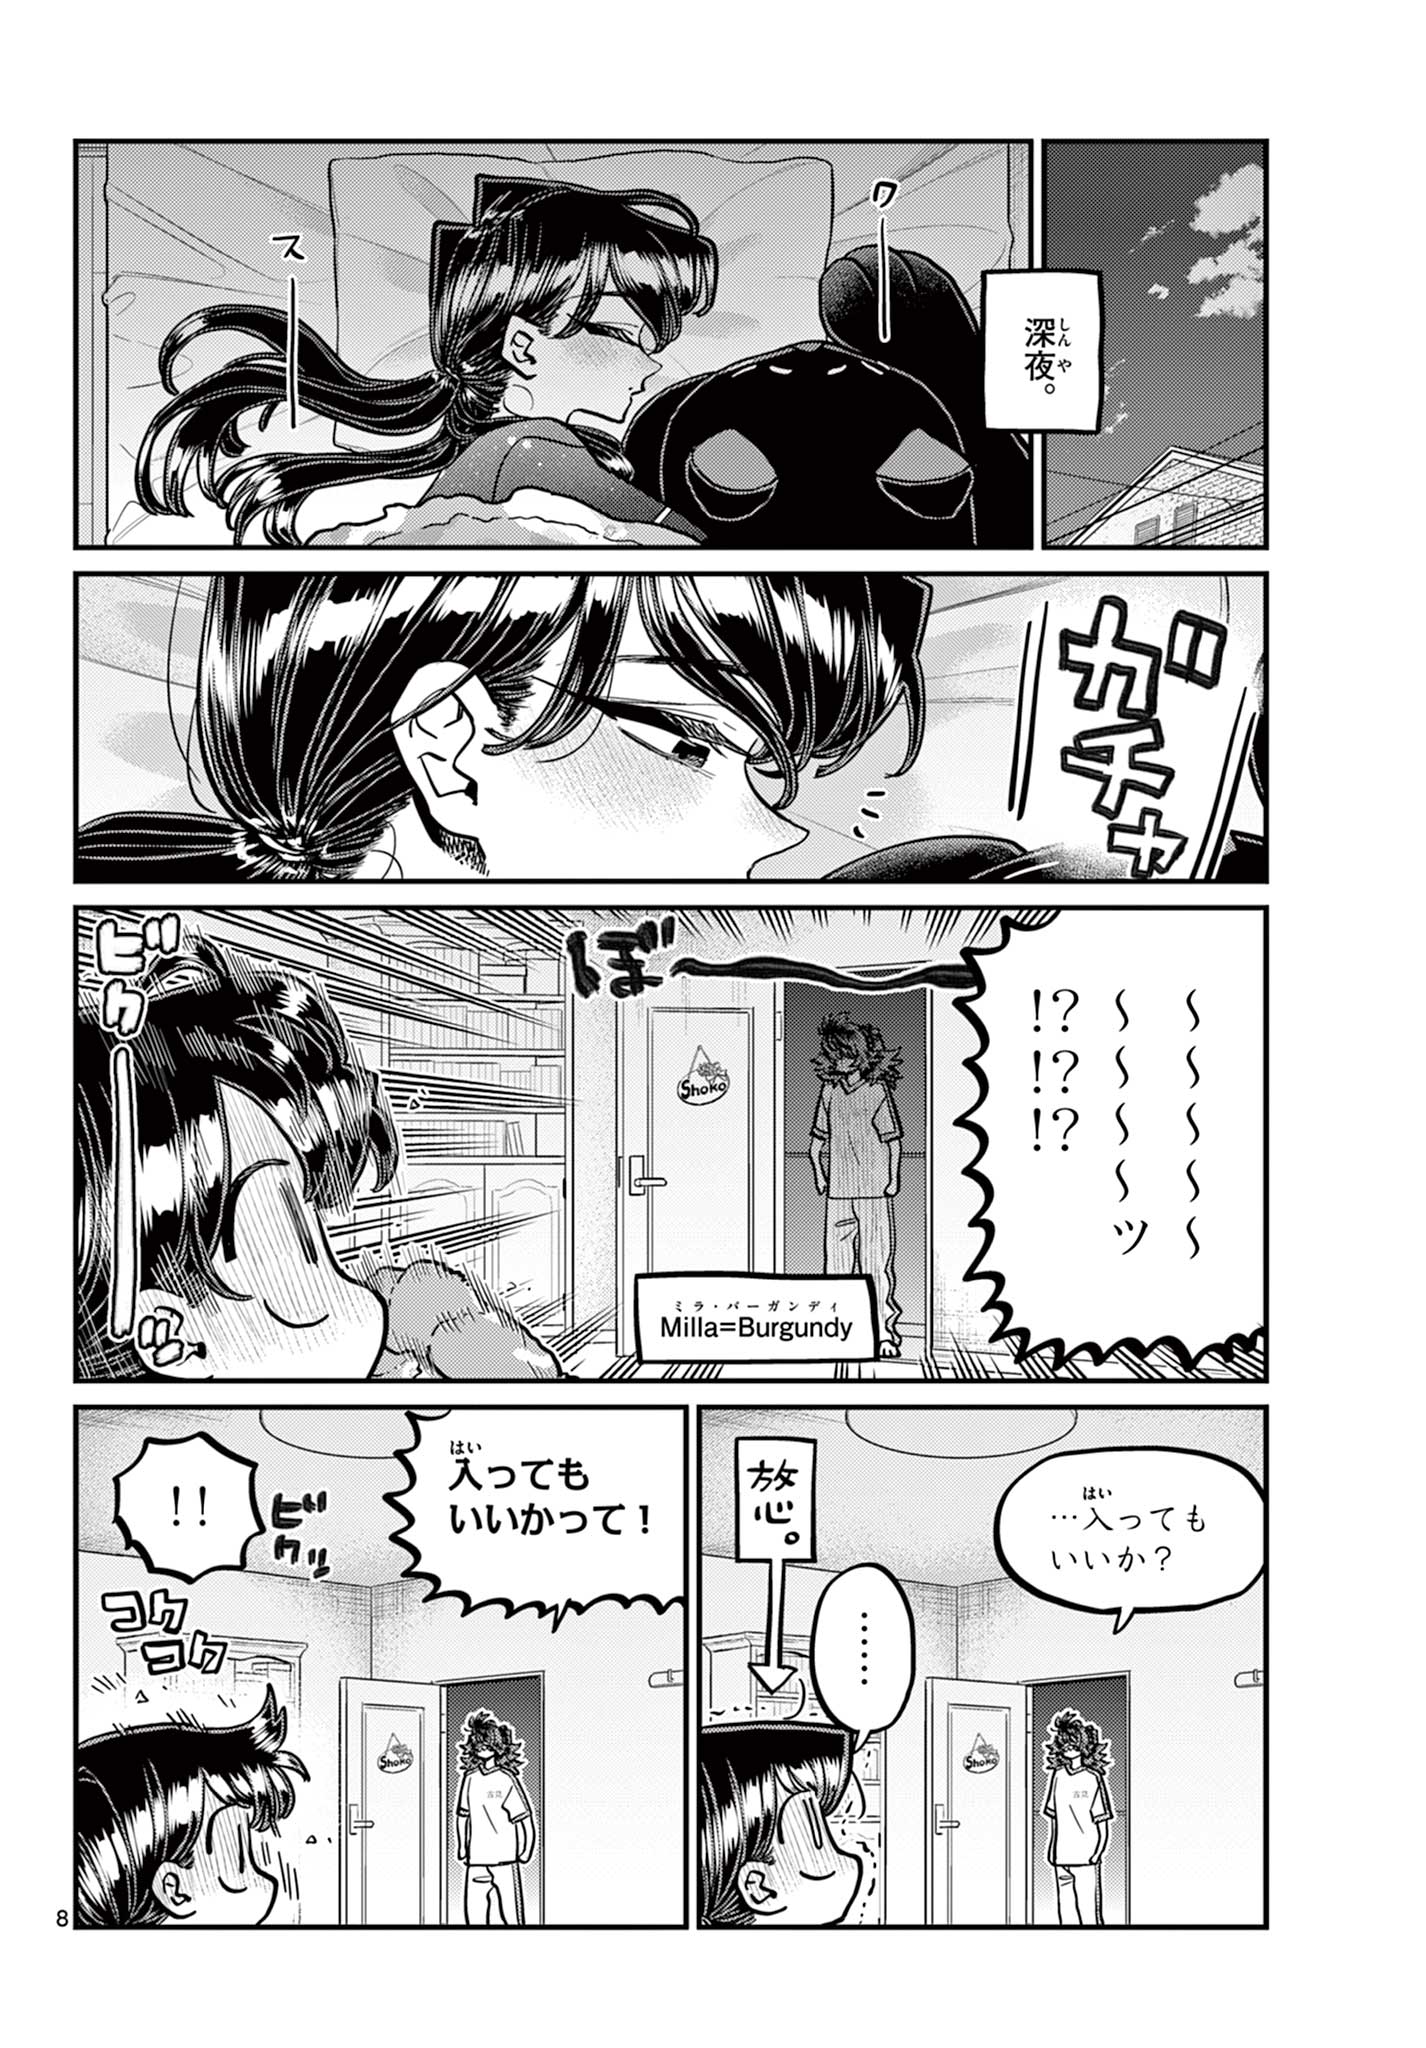 Komi-san wa Komyushou Desu Manga Chapter 402